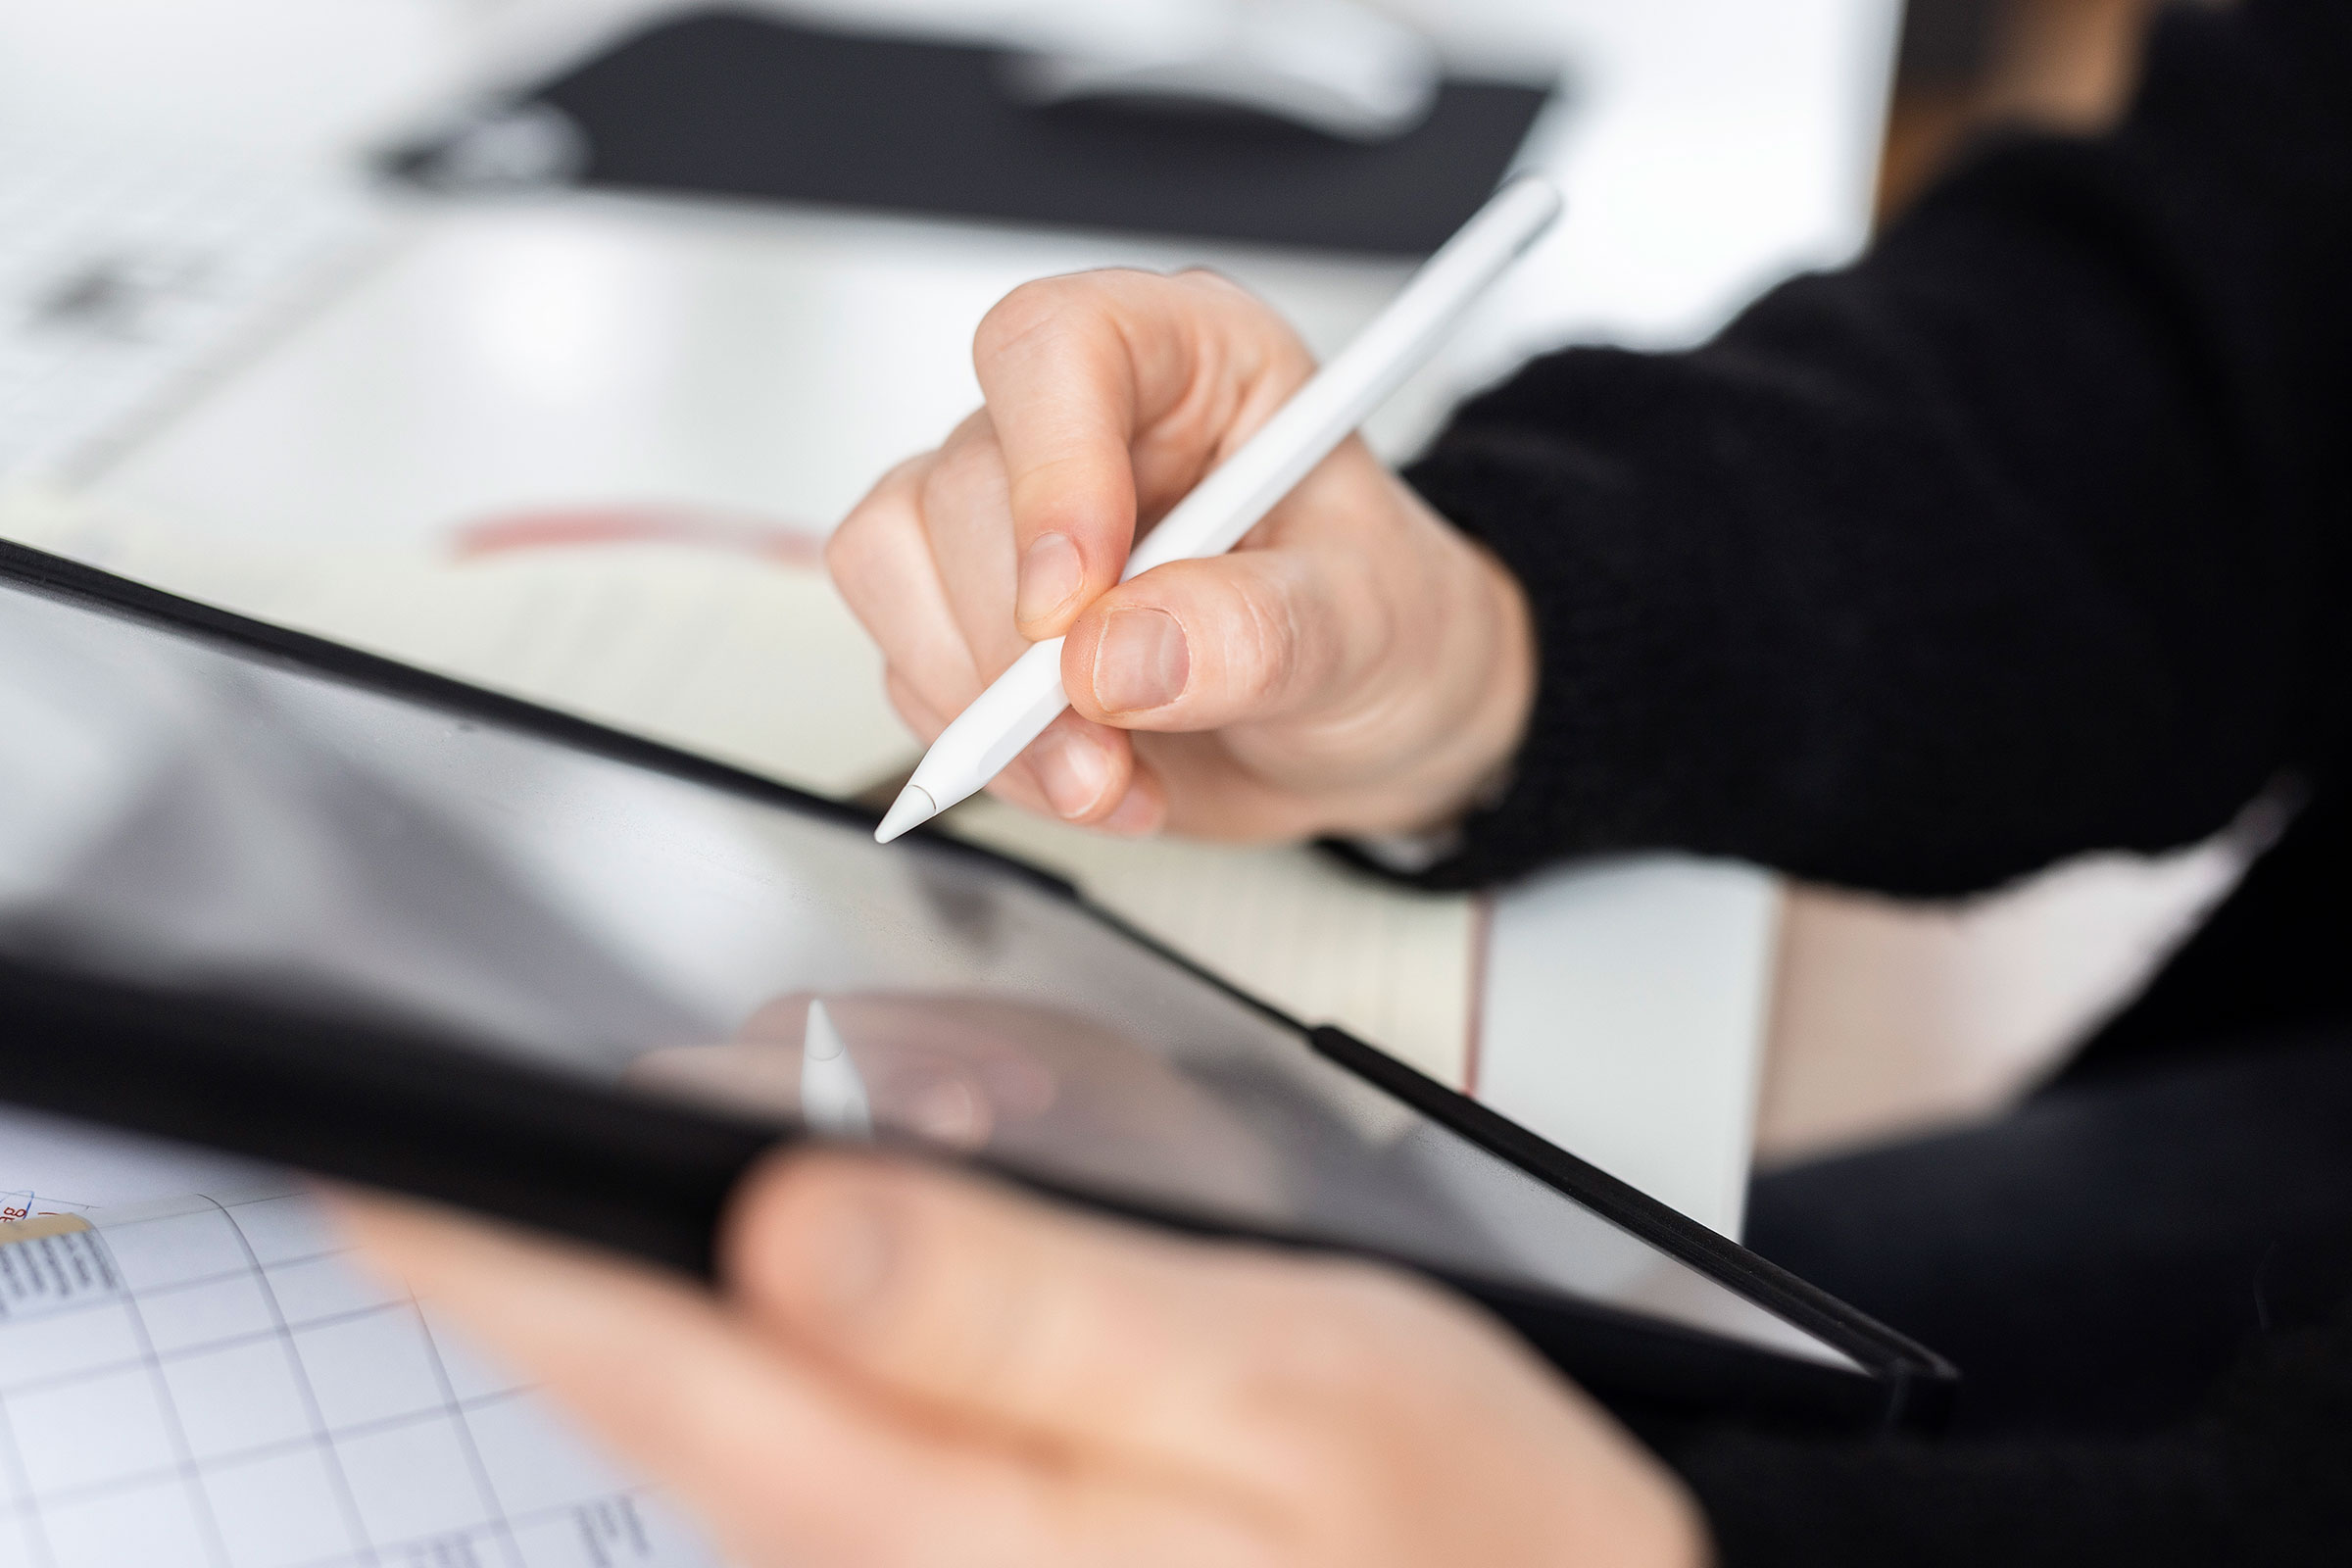 Arbeitssituation in der Agentur, eine Person zeichnet mit einem Stift auf einem Tablet